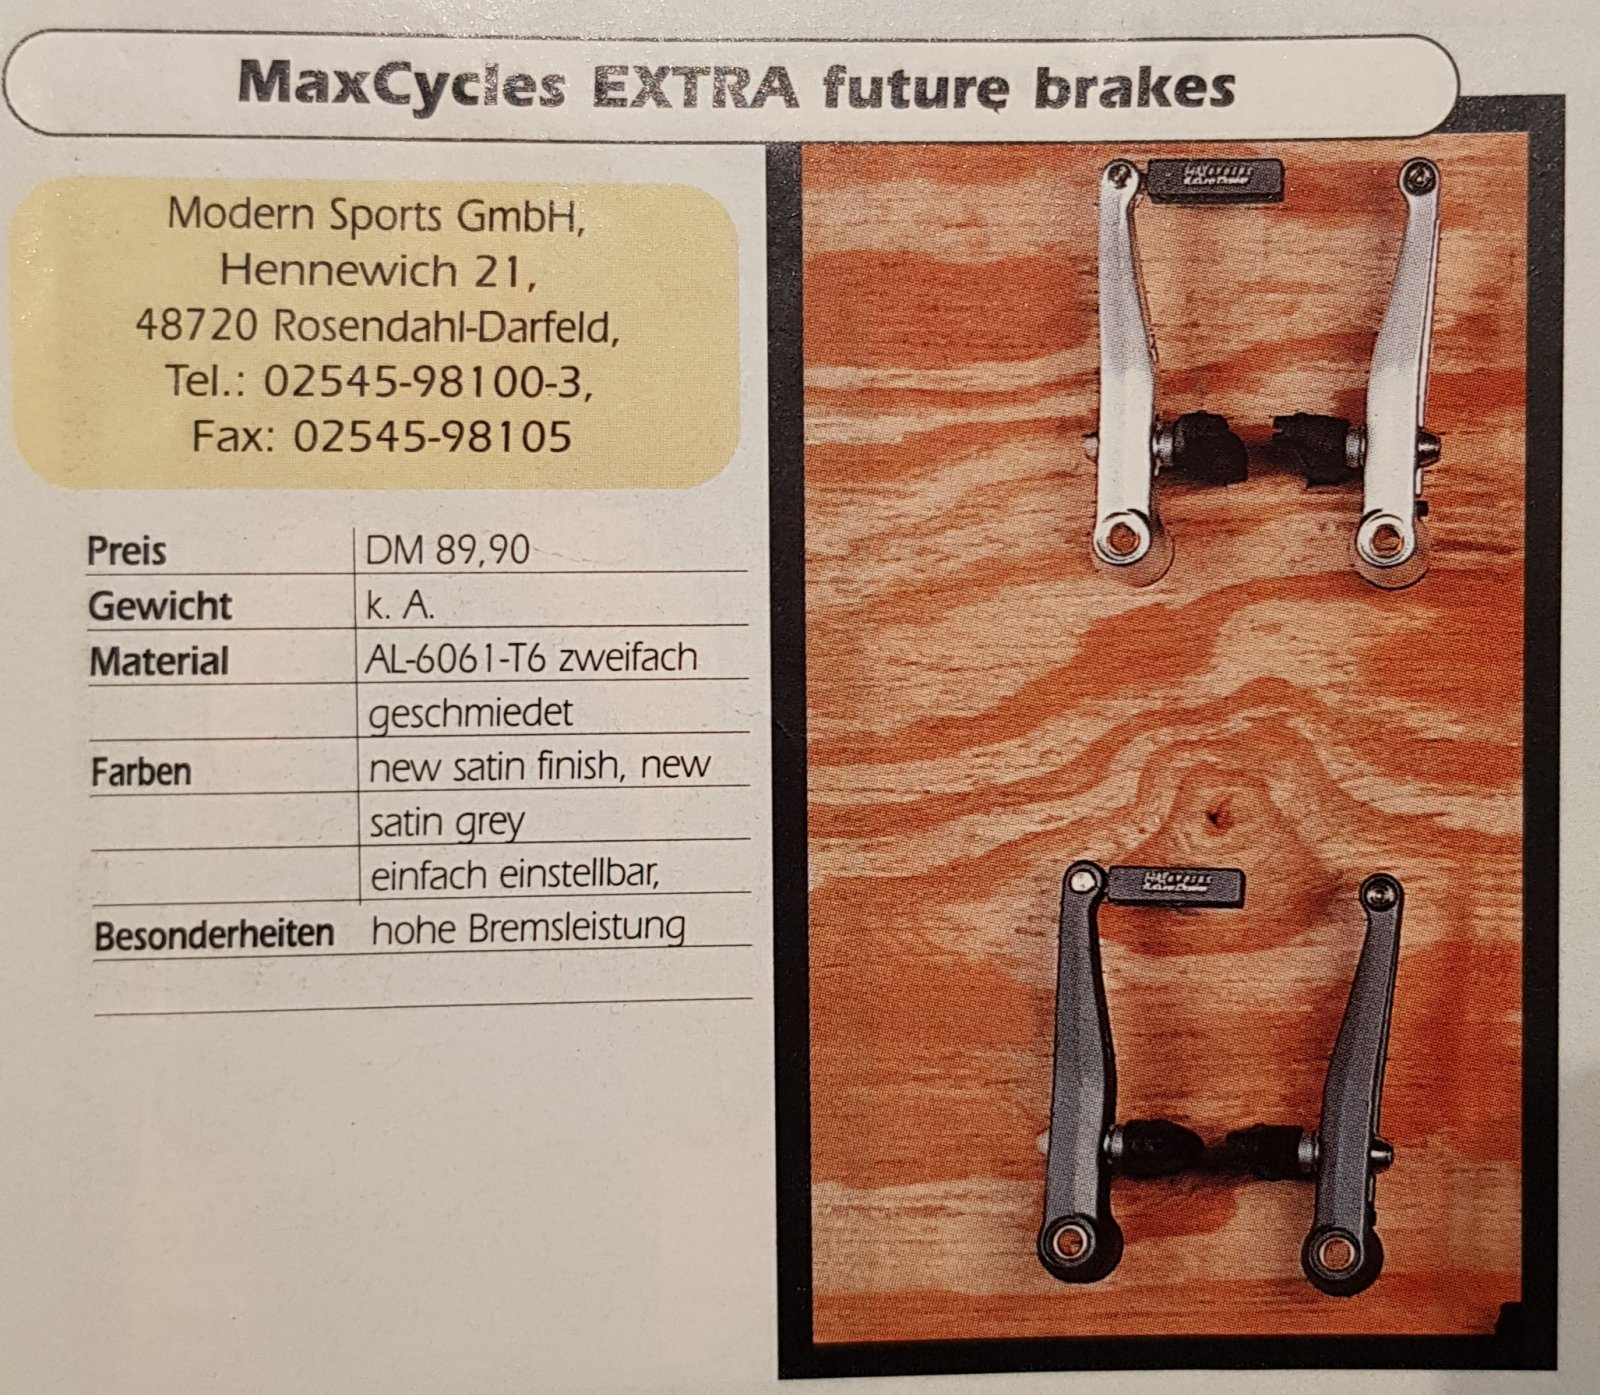 MaxCycles EXTRA future brakes 1997.jpg